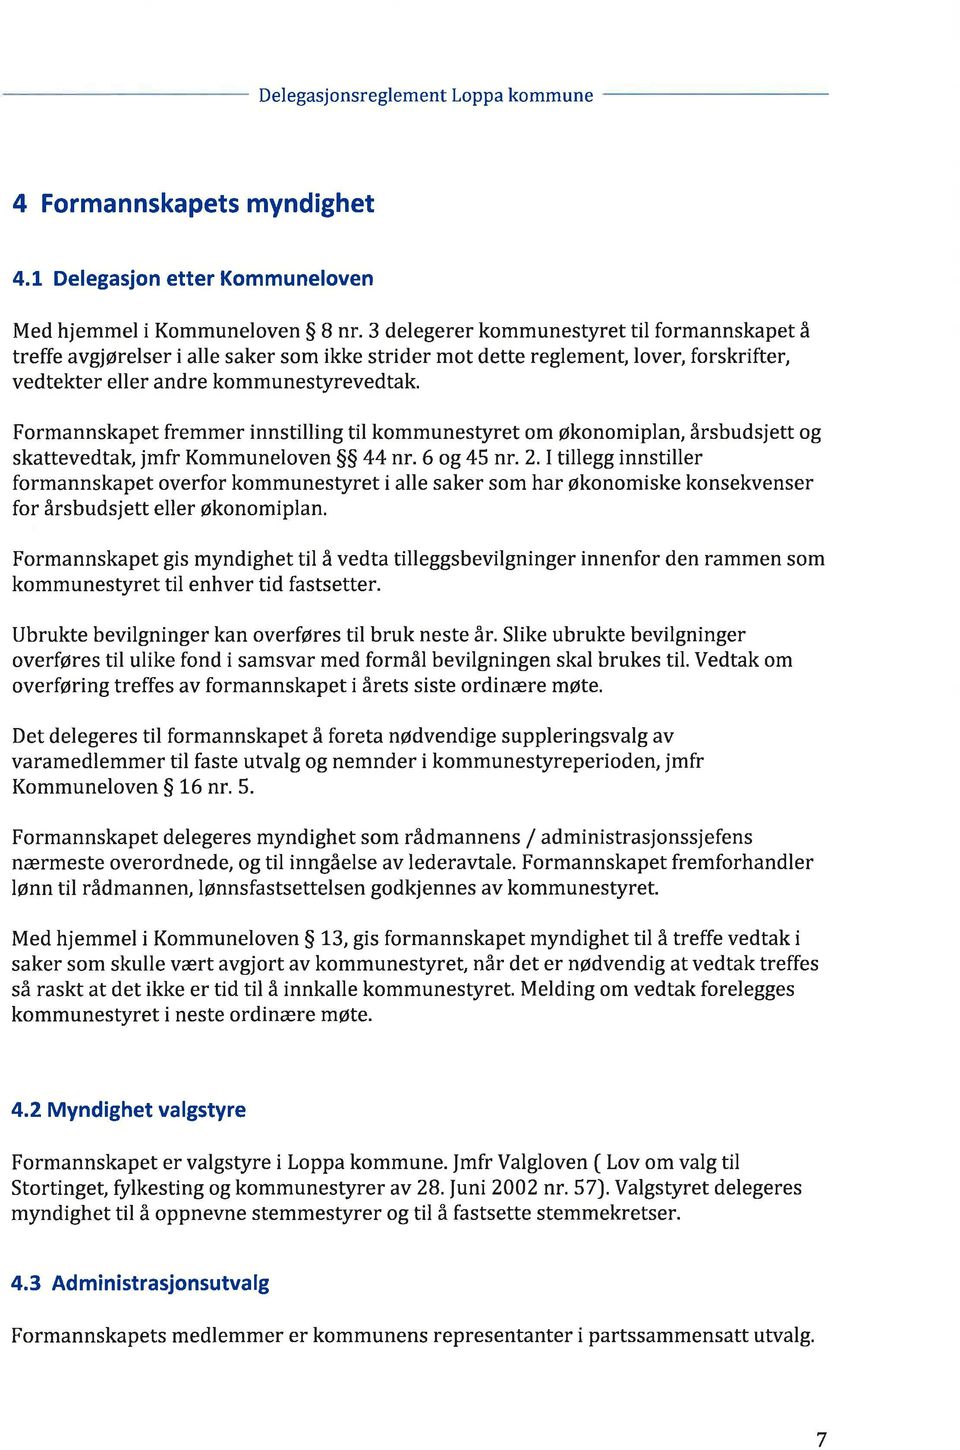 Formannskapet fremmer innstilling til kommunestyret om økonomiplan, årsbudsjett og skattevedtaþ jmfr Kommuneloven SS 44 nr. 6 og 45 nr. 2.